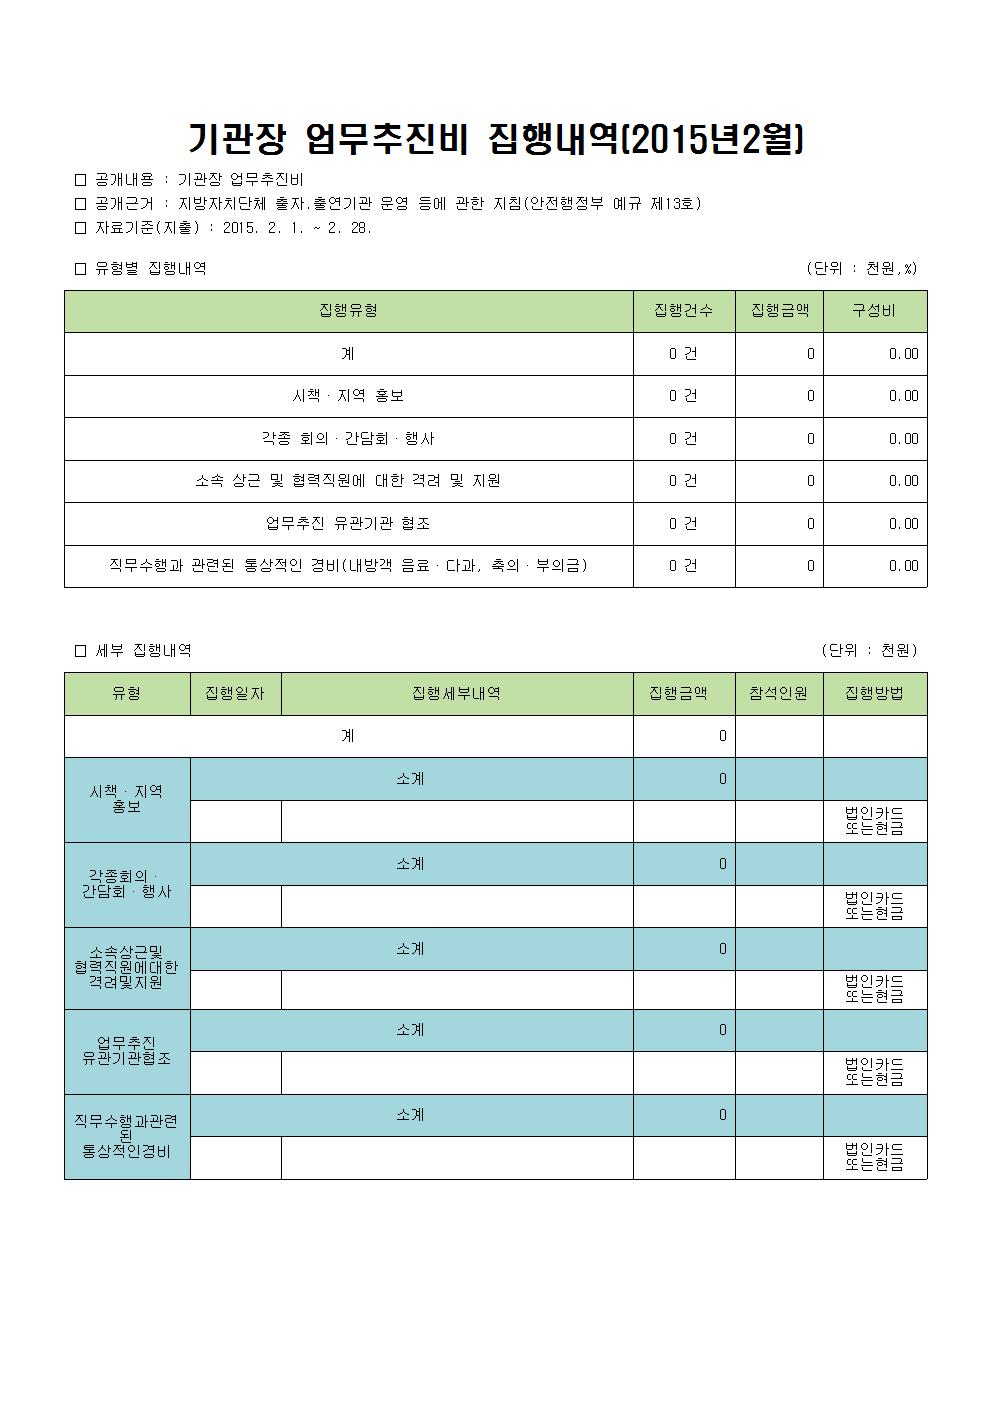 기관장 업무추진비(2015.02월)공개